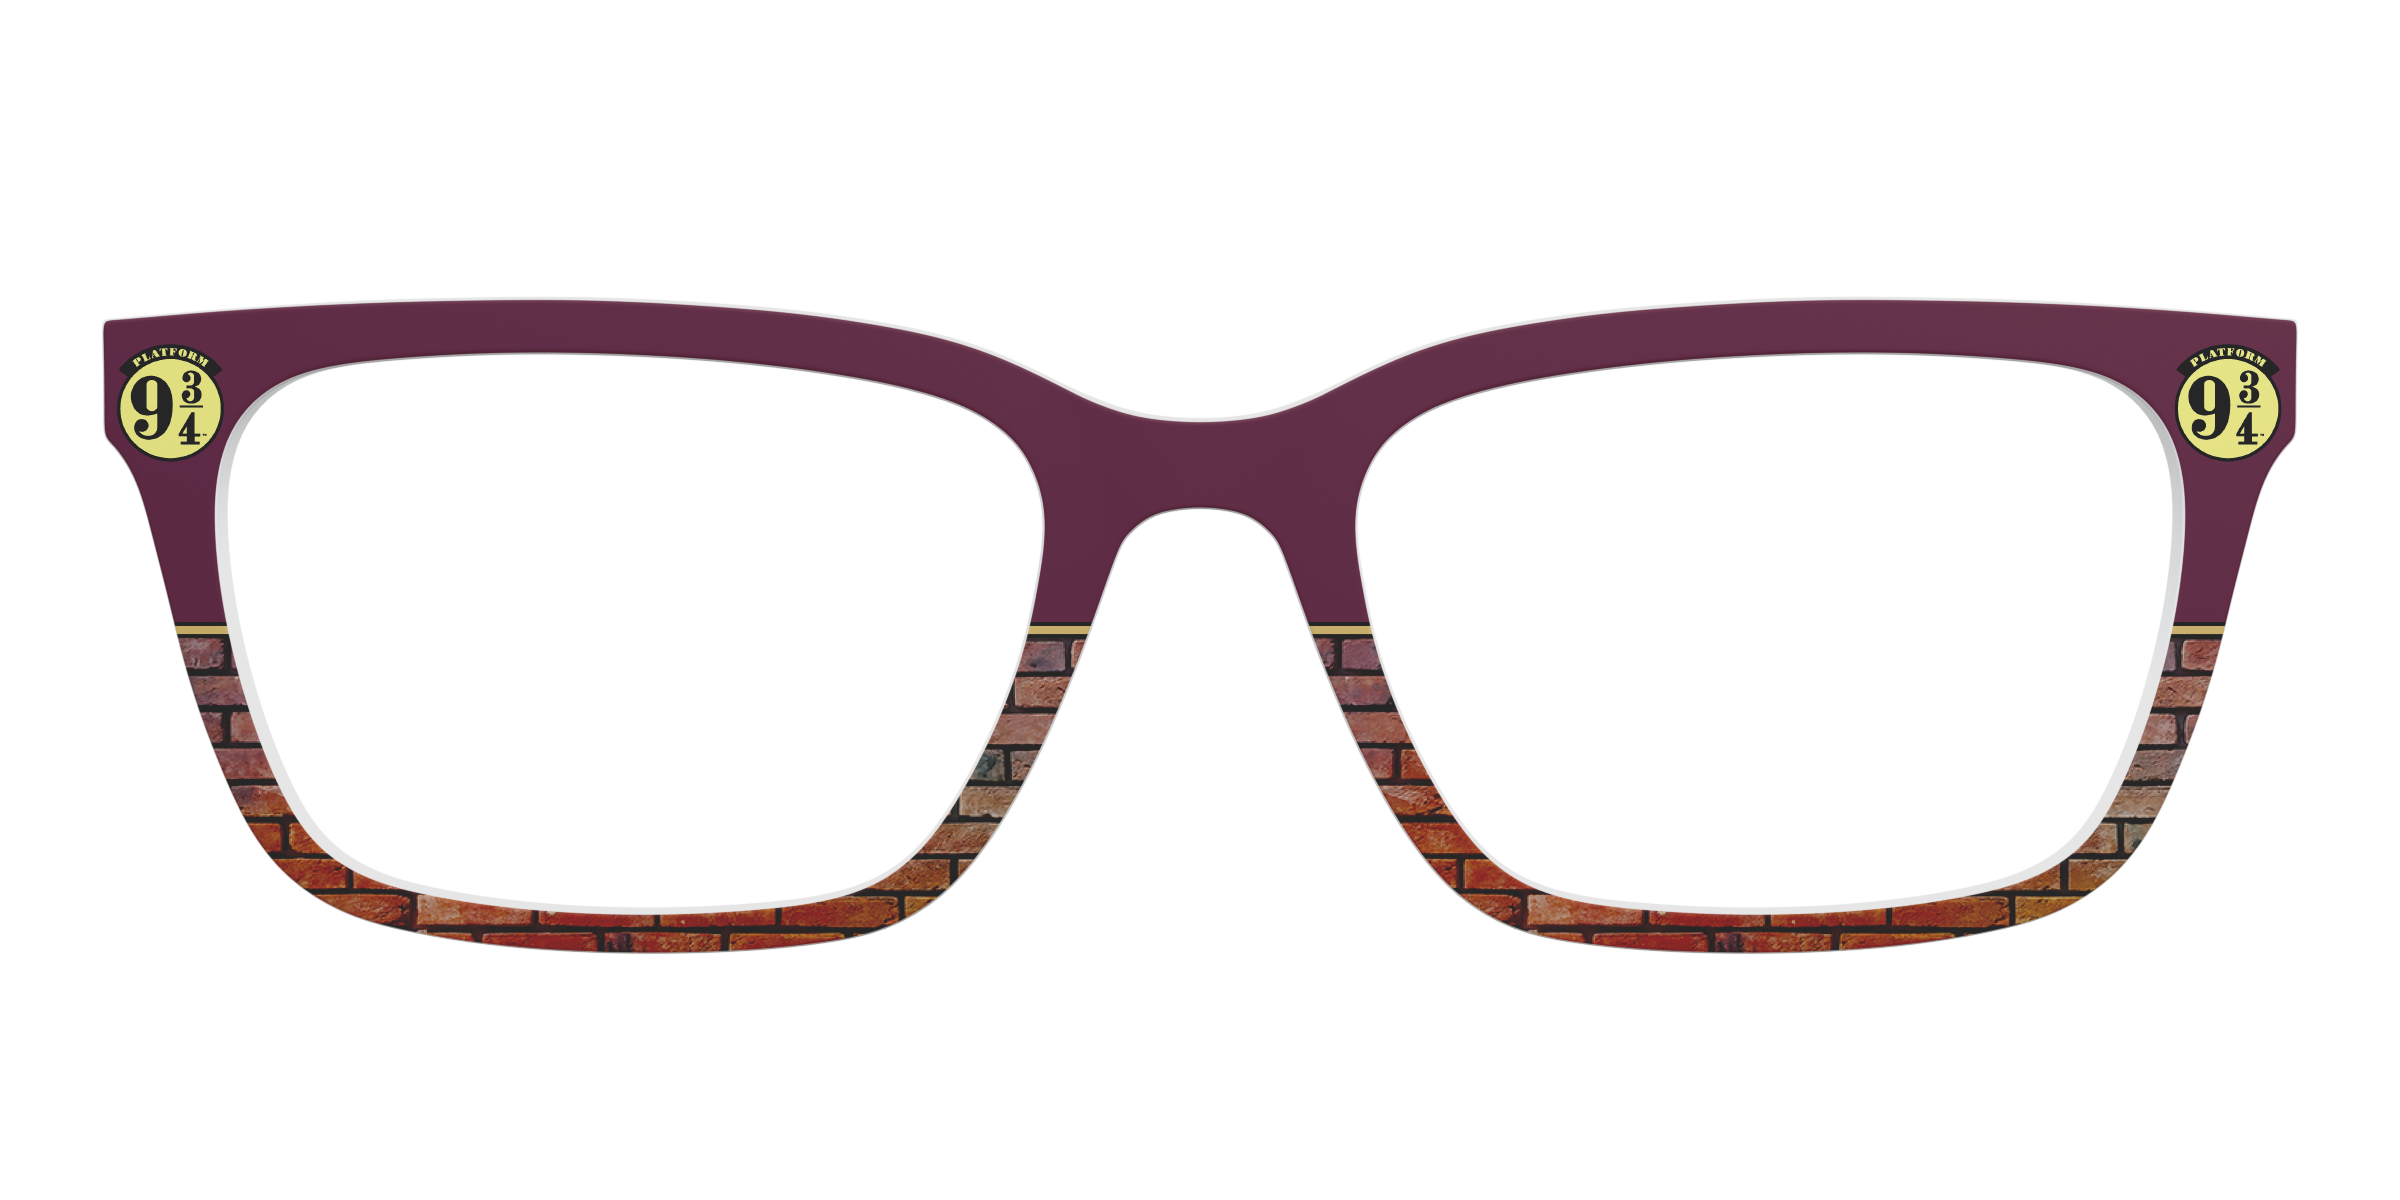 Harry Potter Glasses Case - Platform 9 3/4